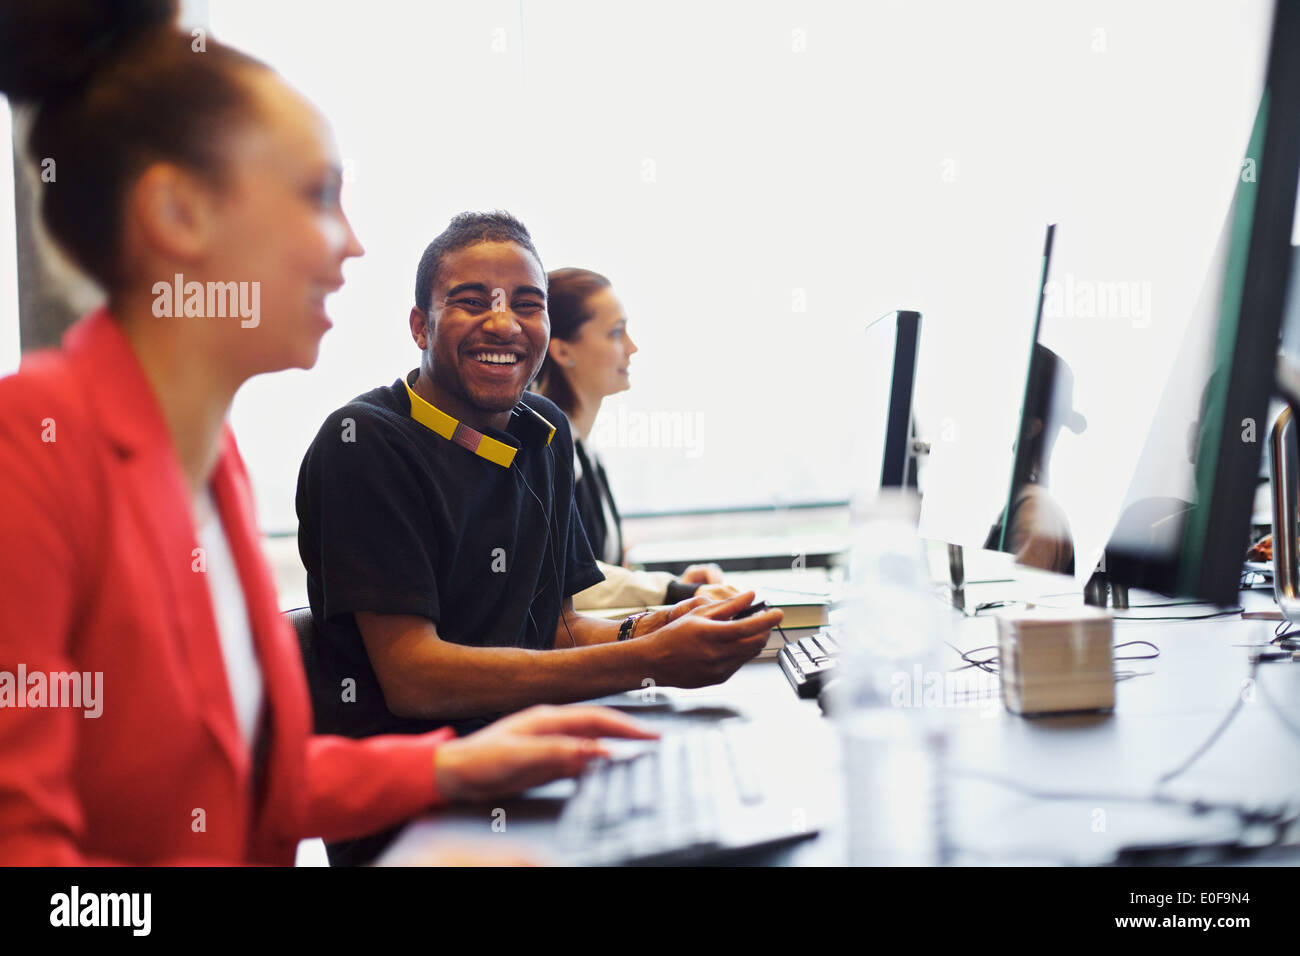 Les jeunes à l'homme à la caméra en souriant tout en travaillant sur l'ordinateur en salle de classe moderne. Les jeunes étudiants qui étudient. Banque D'Images